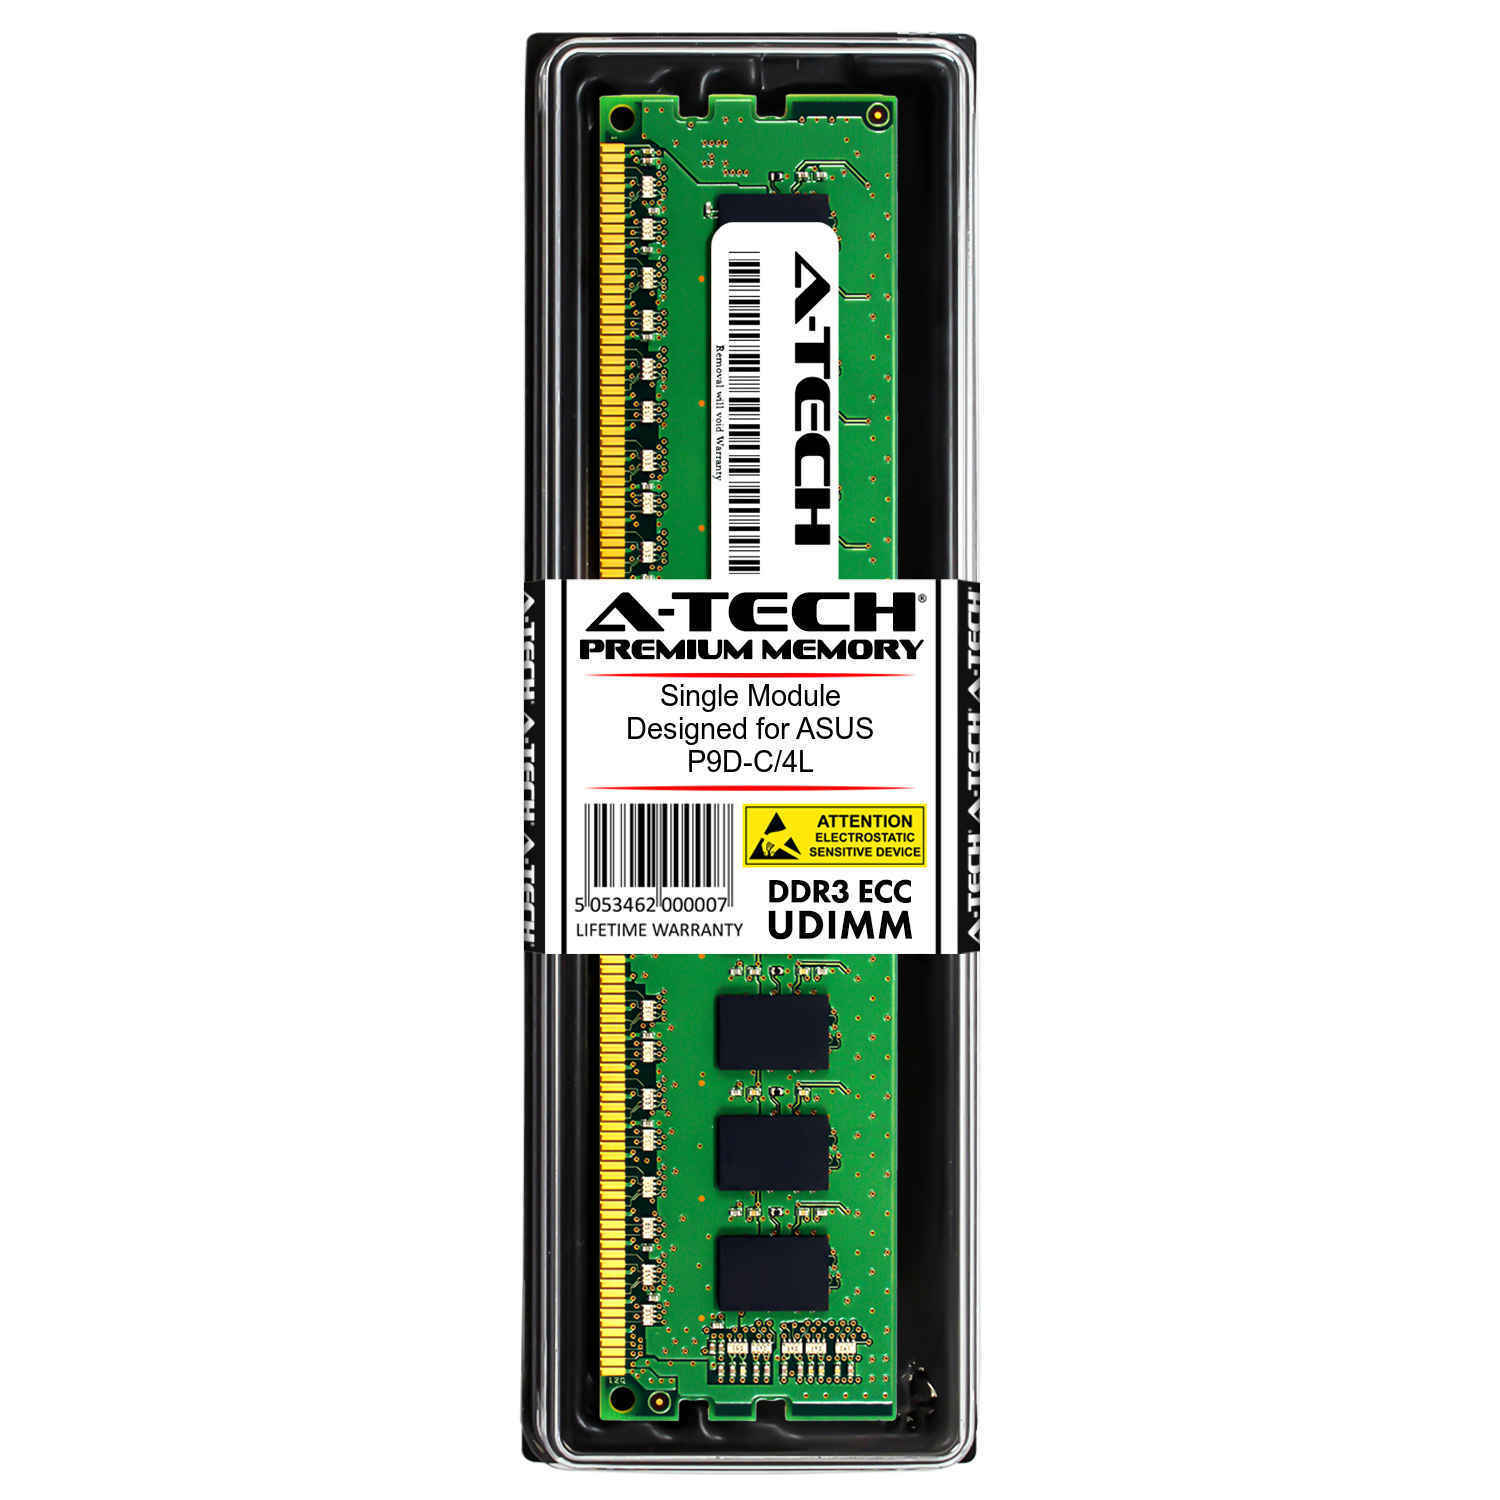 4GB 1Rx8 PC3L-12800E ECC UDIMM ASUS P9D-C/4L M4N68T-M LE P6X58-E WS Memory RAM